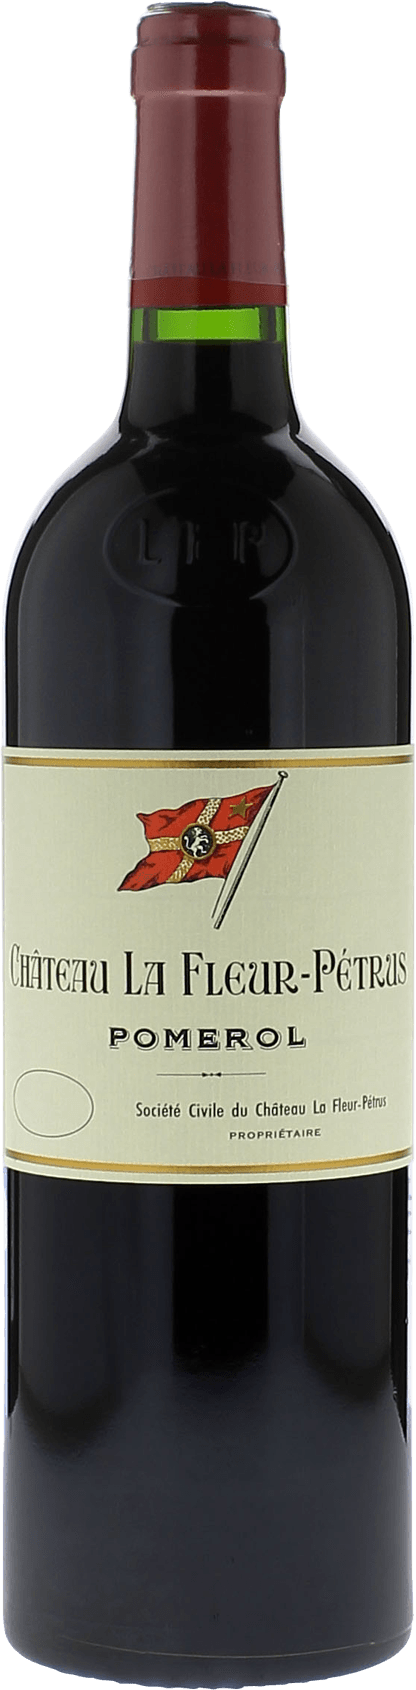 La fleur petrus 2012  Pomerol, Bordeaux rouge